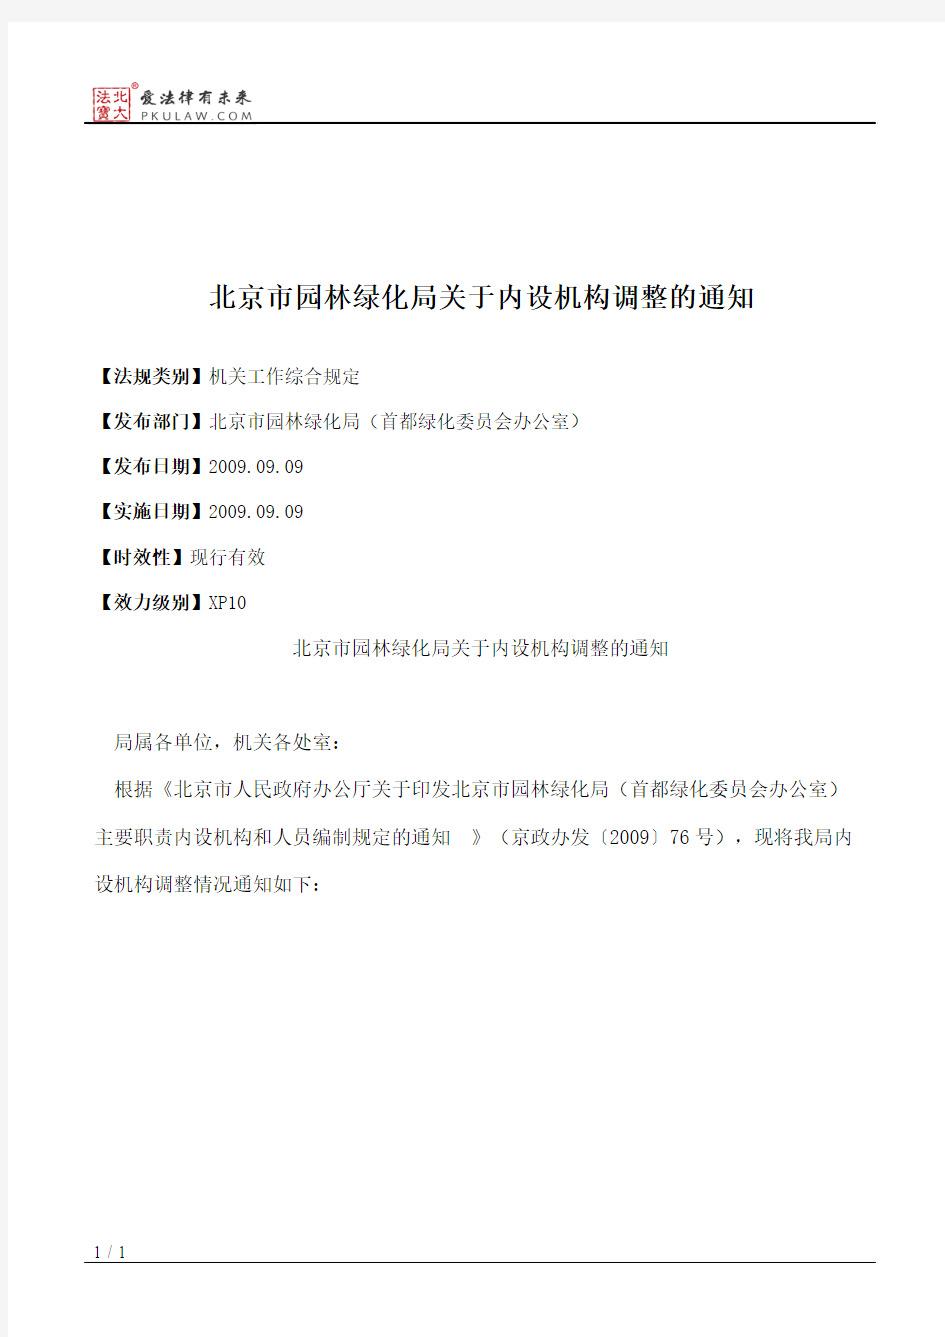 北京市园林绿化局关于内设机构调整的通知